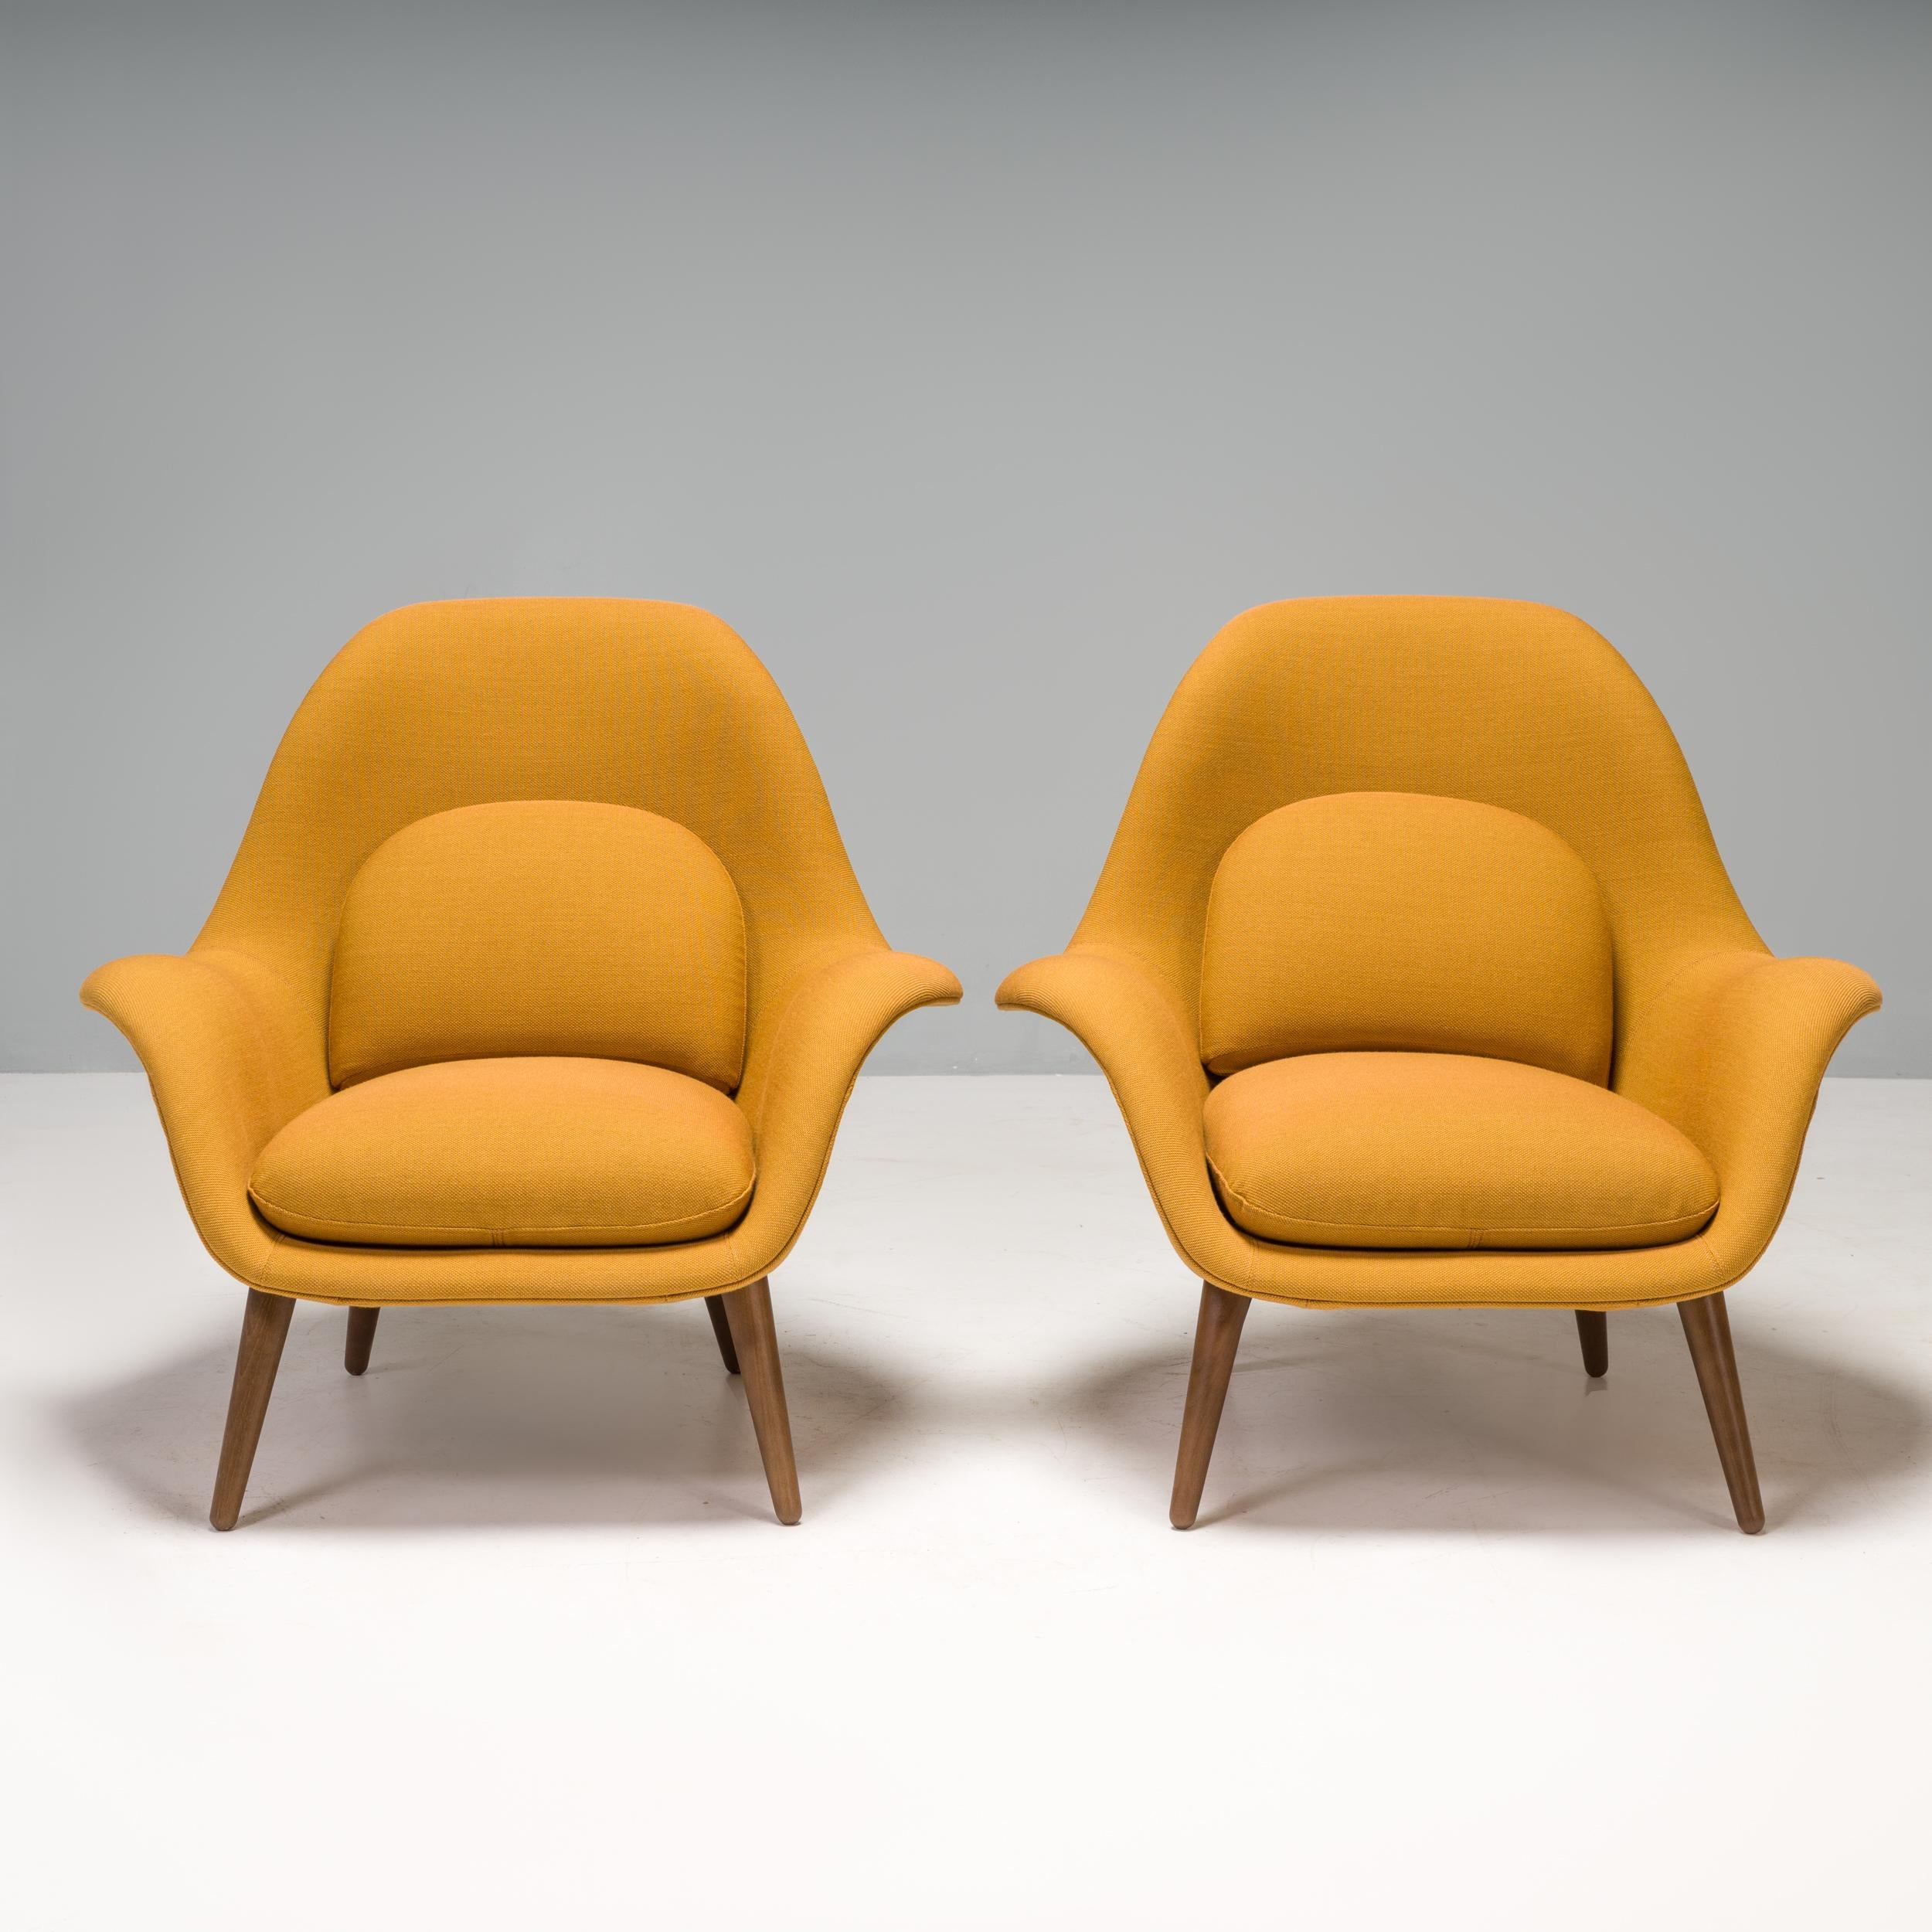 Conçue par Space Copenhagen pour le fabricant de meubles danois Fredericia, cette paire de fauteuils Swoon a été fabriquée en 2021.

Dotées d'une structure en noyer laqué, les chaises ont une silhouette sculpturale avec un haut dossier incurvé, ce